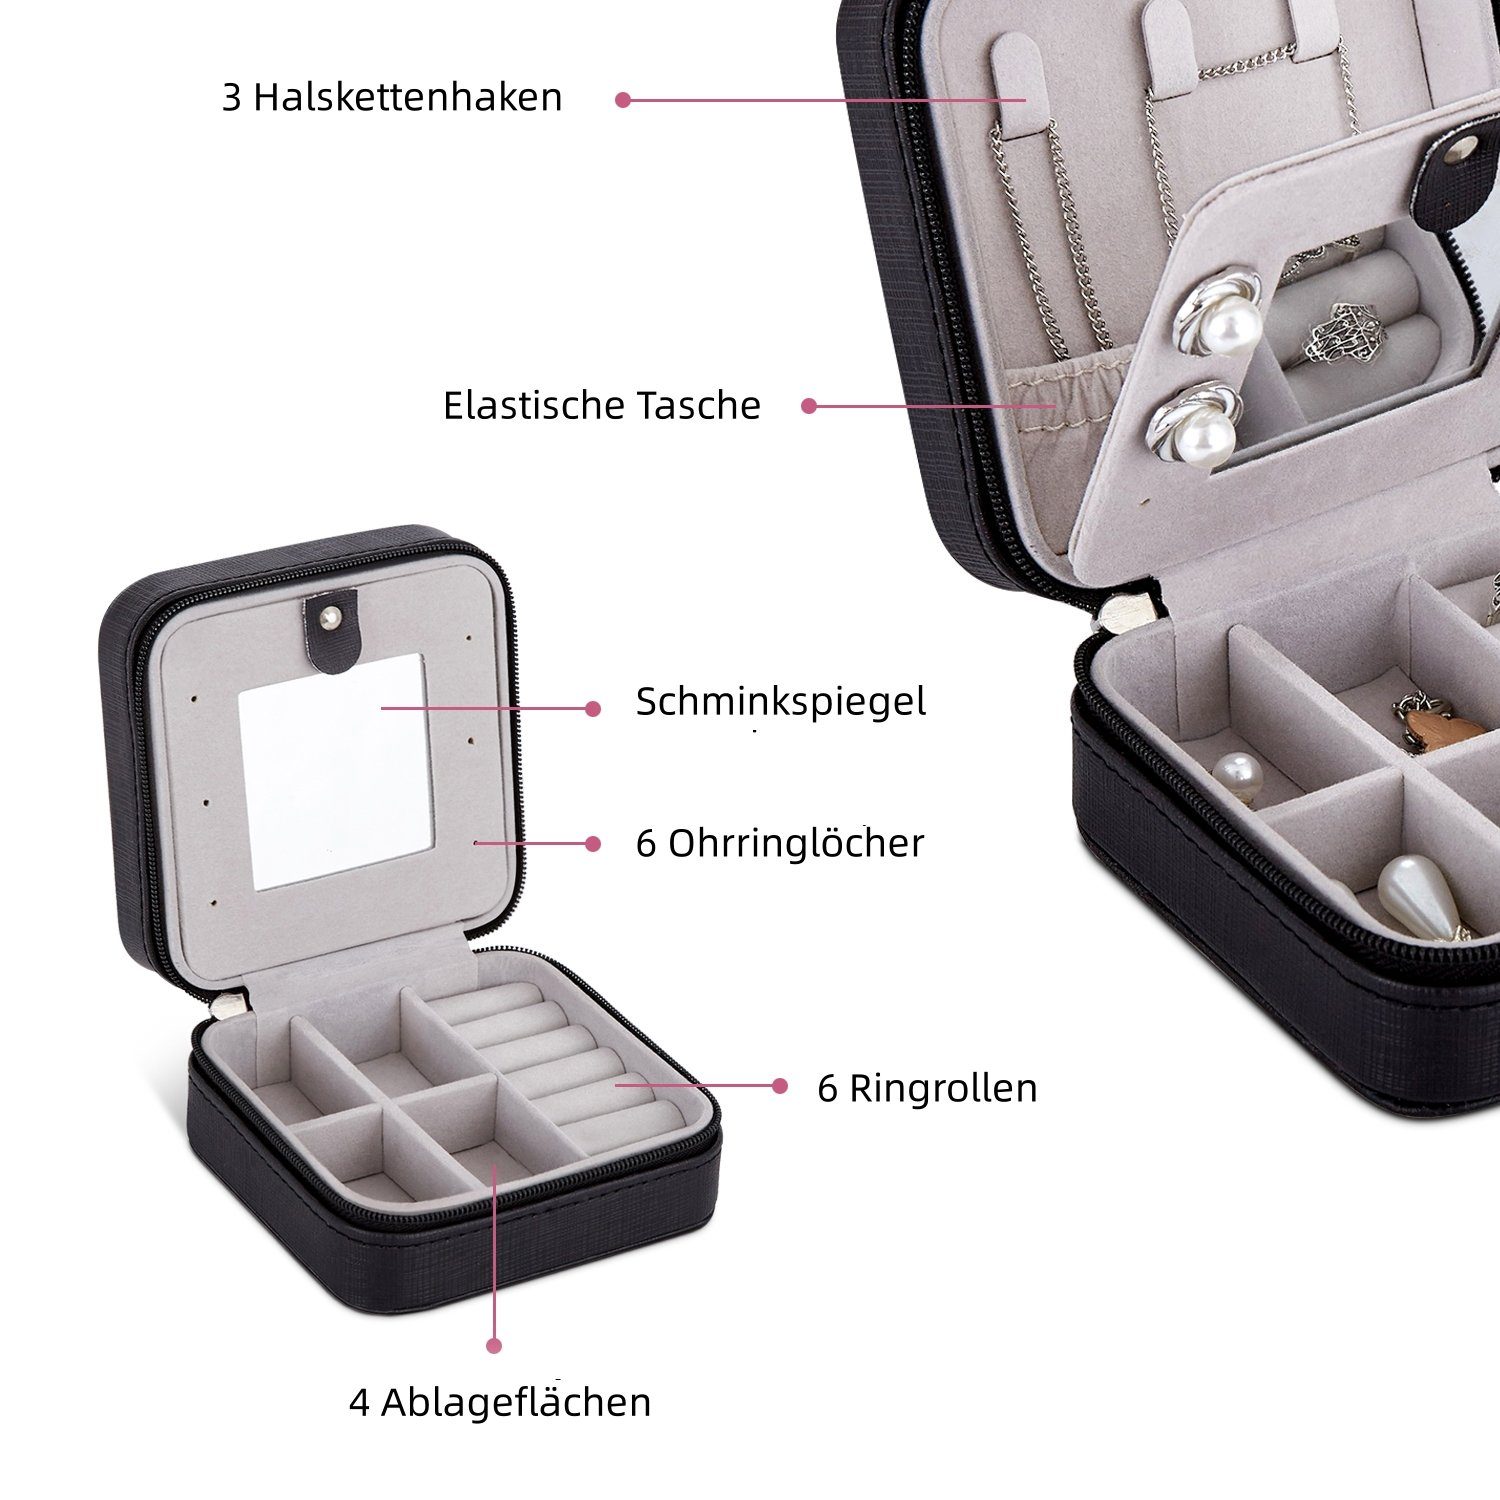 Mini tragbar, mit Aufbewahrungskasten, schwarz Spiegel Meerveil Schmuckkasten